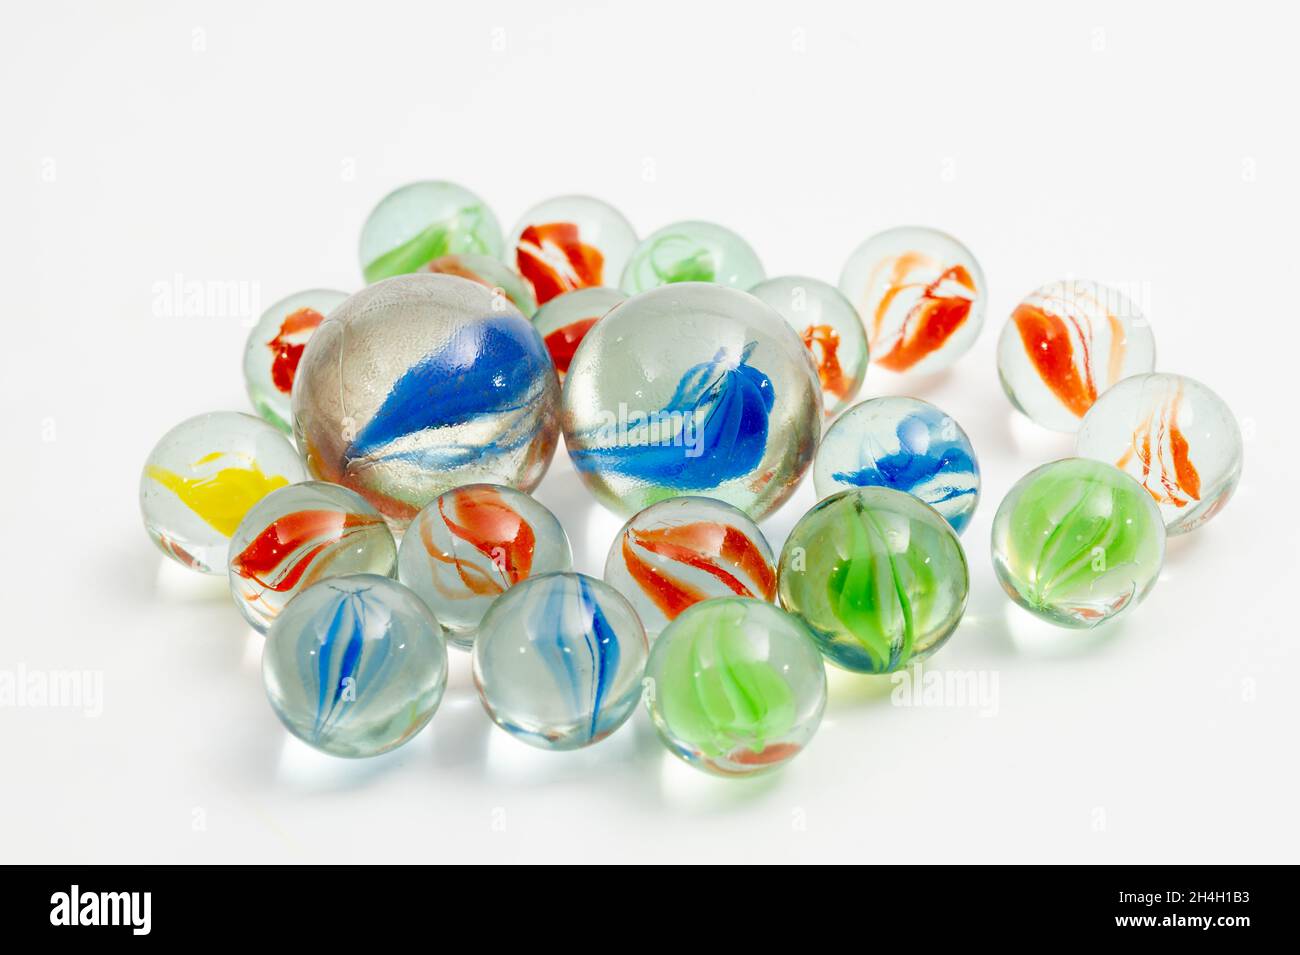 Eine Sammlung von Perlen in verschiedenen Farben, die in Perlenspiel, einem traditionellen koreanischen Spiel, verwendet werden Stockfoto